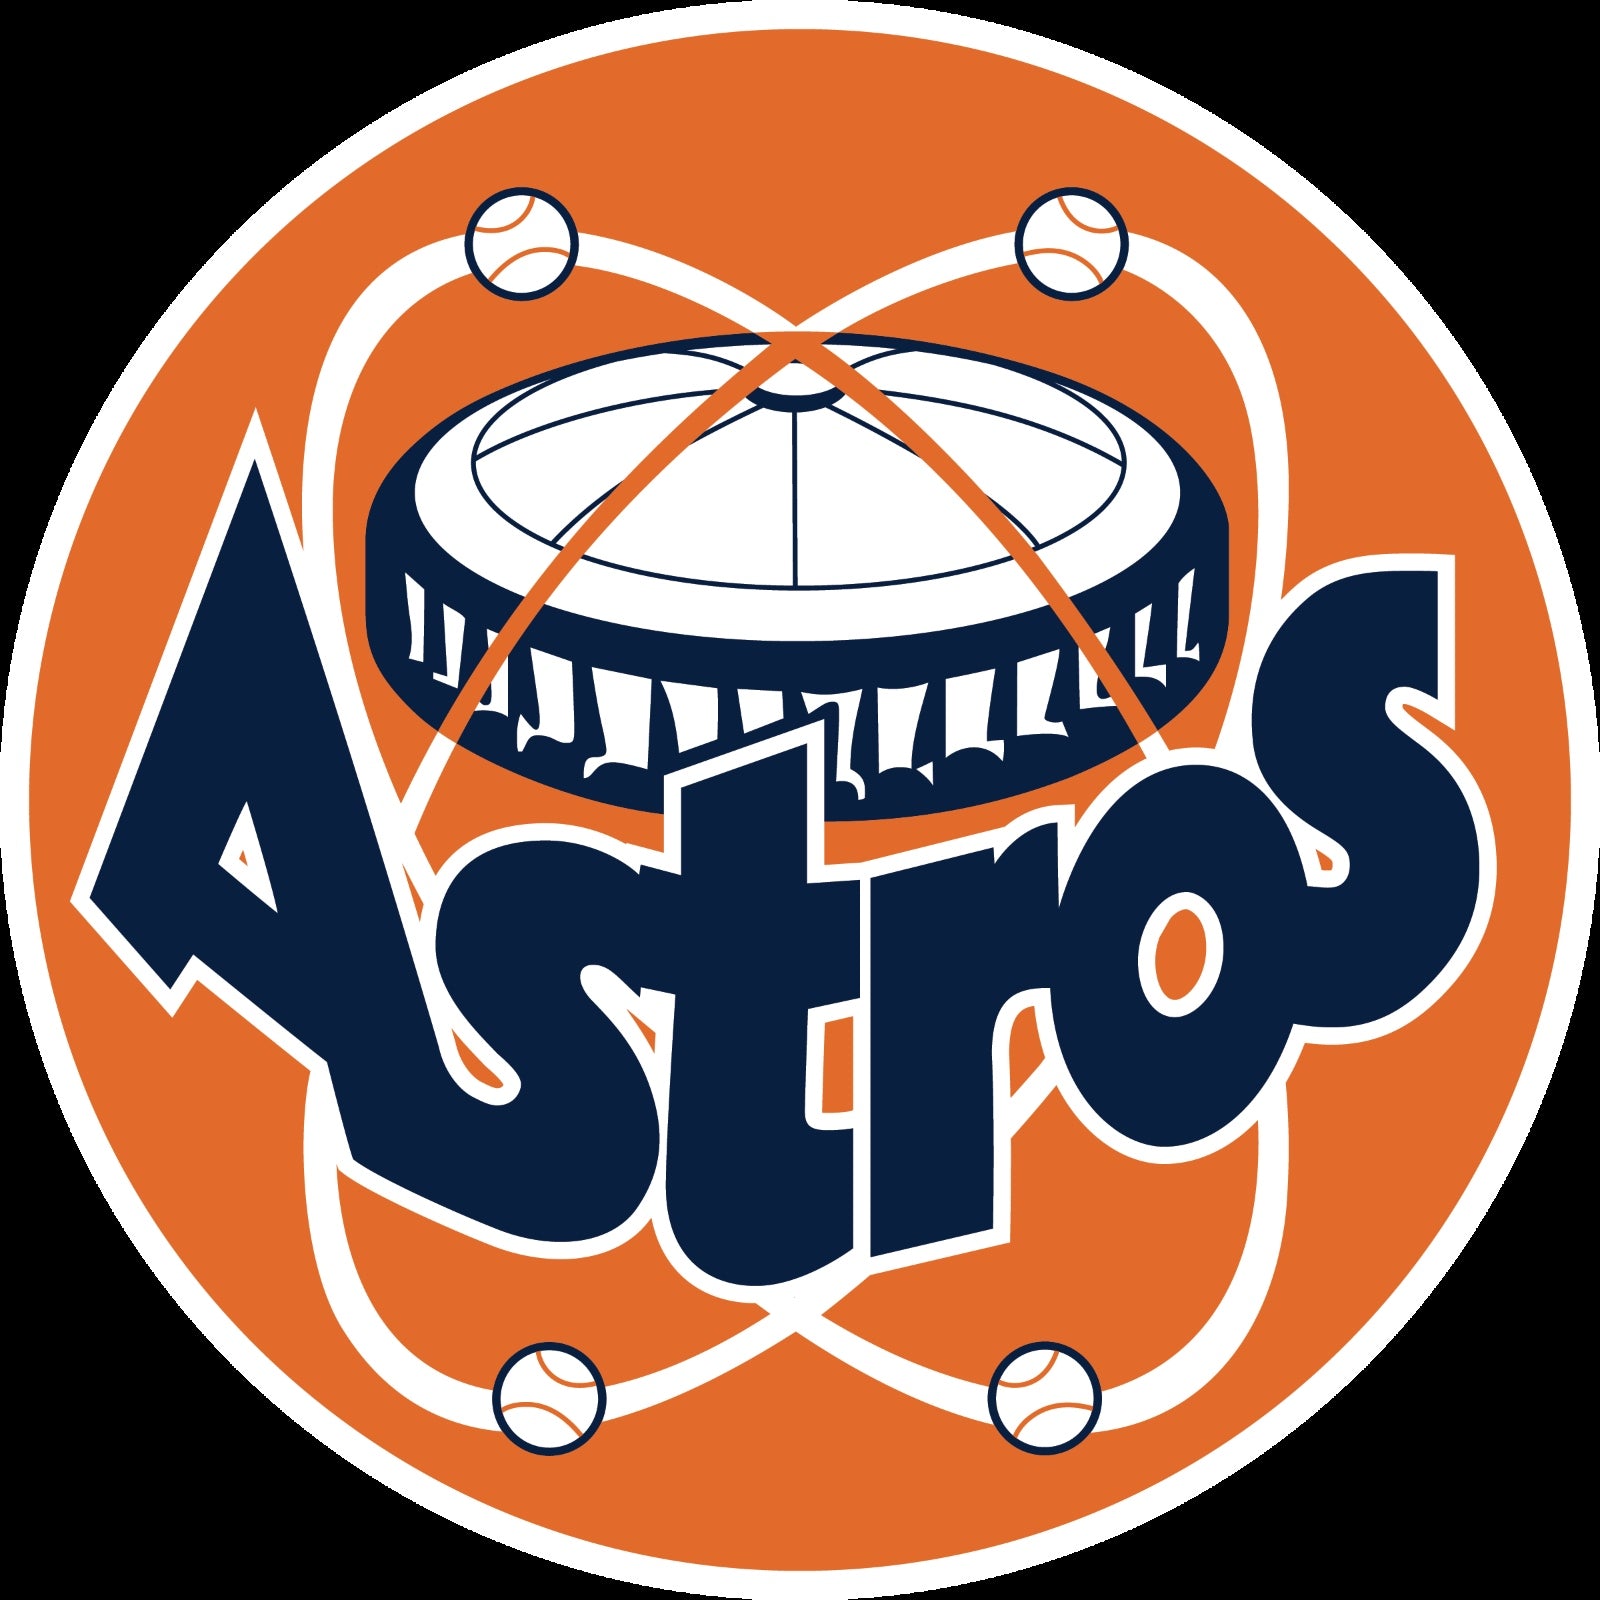 Hoston Astros Wallpaper by texasOB1 on DeviantArt